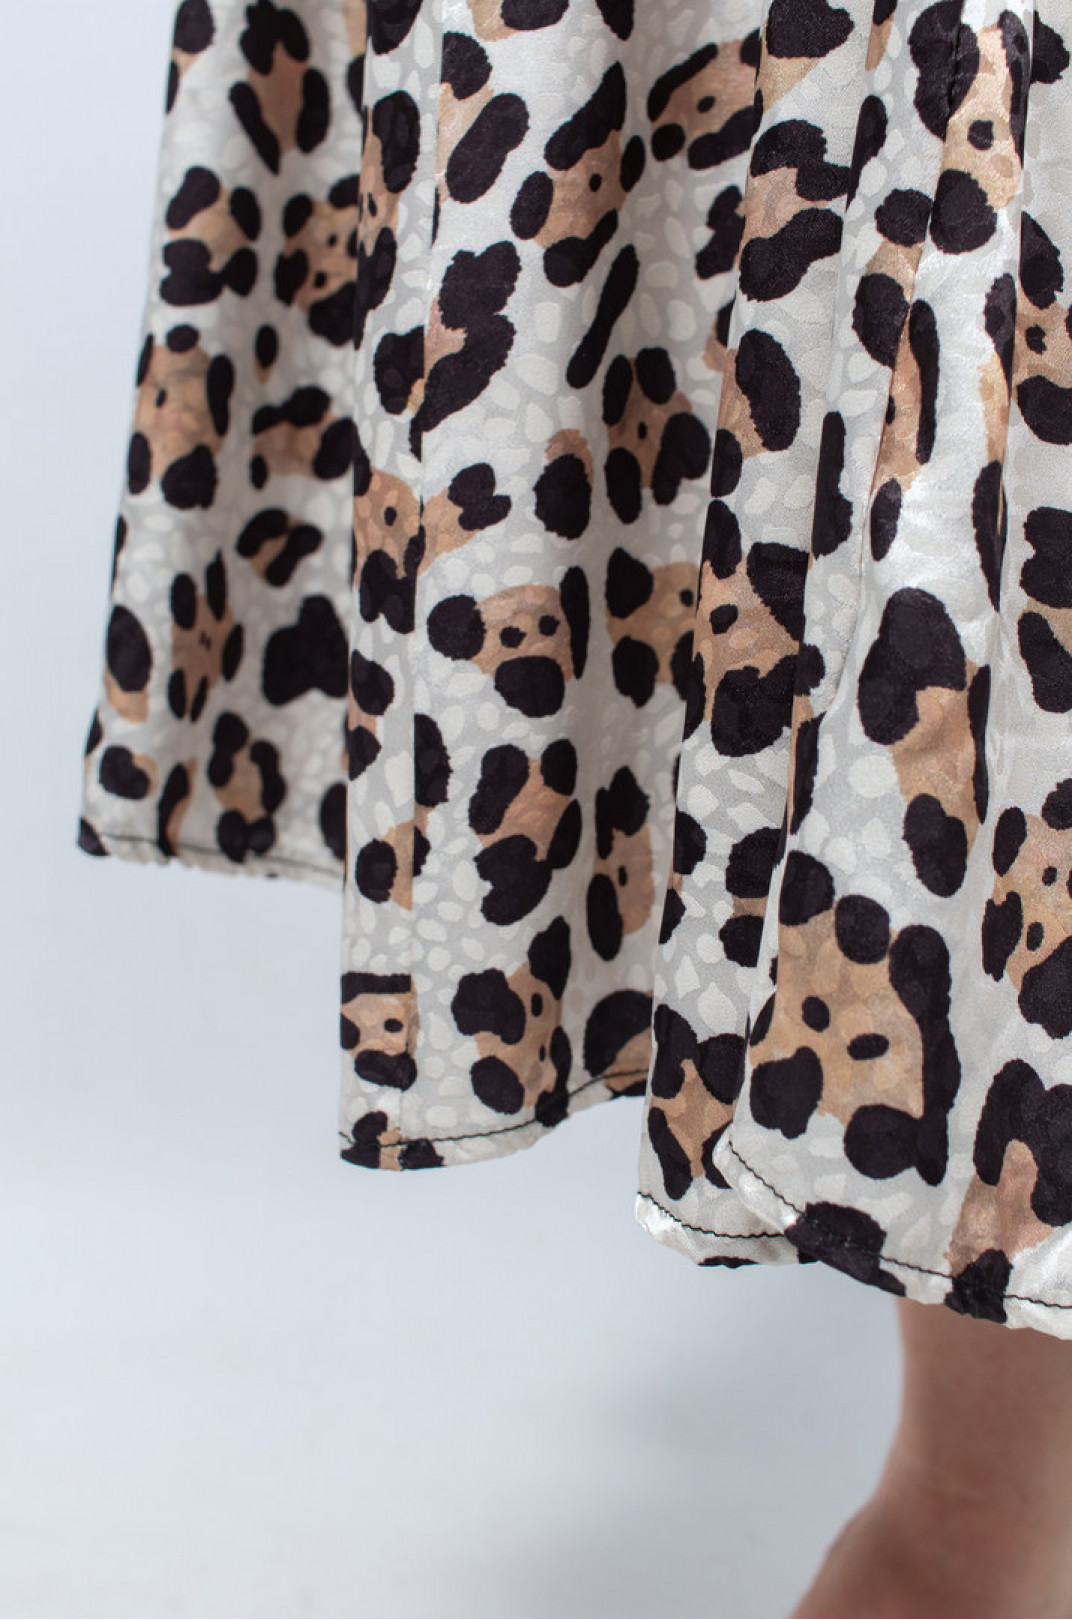 Леопардовое атласное платье с поясом батал